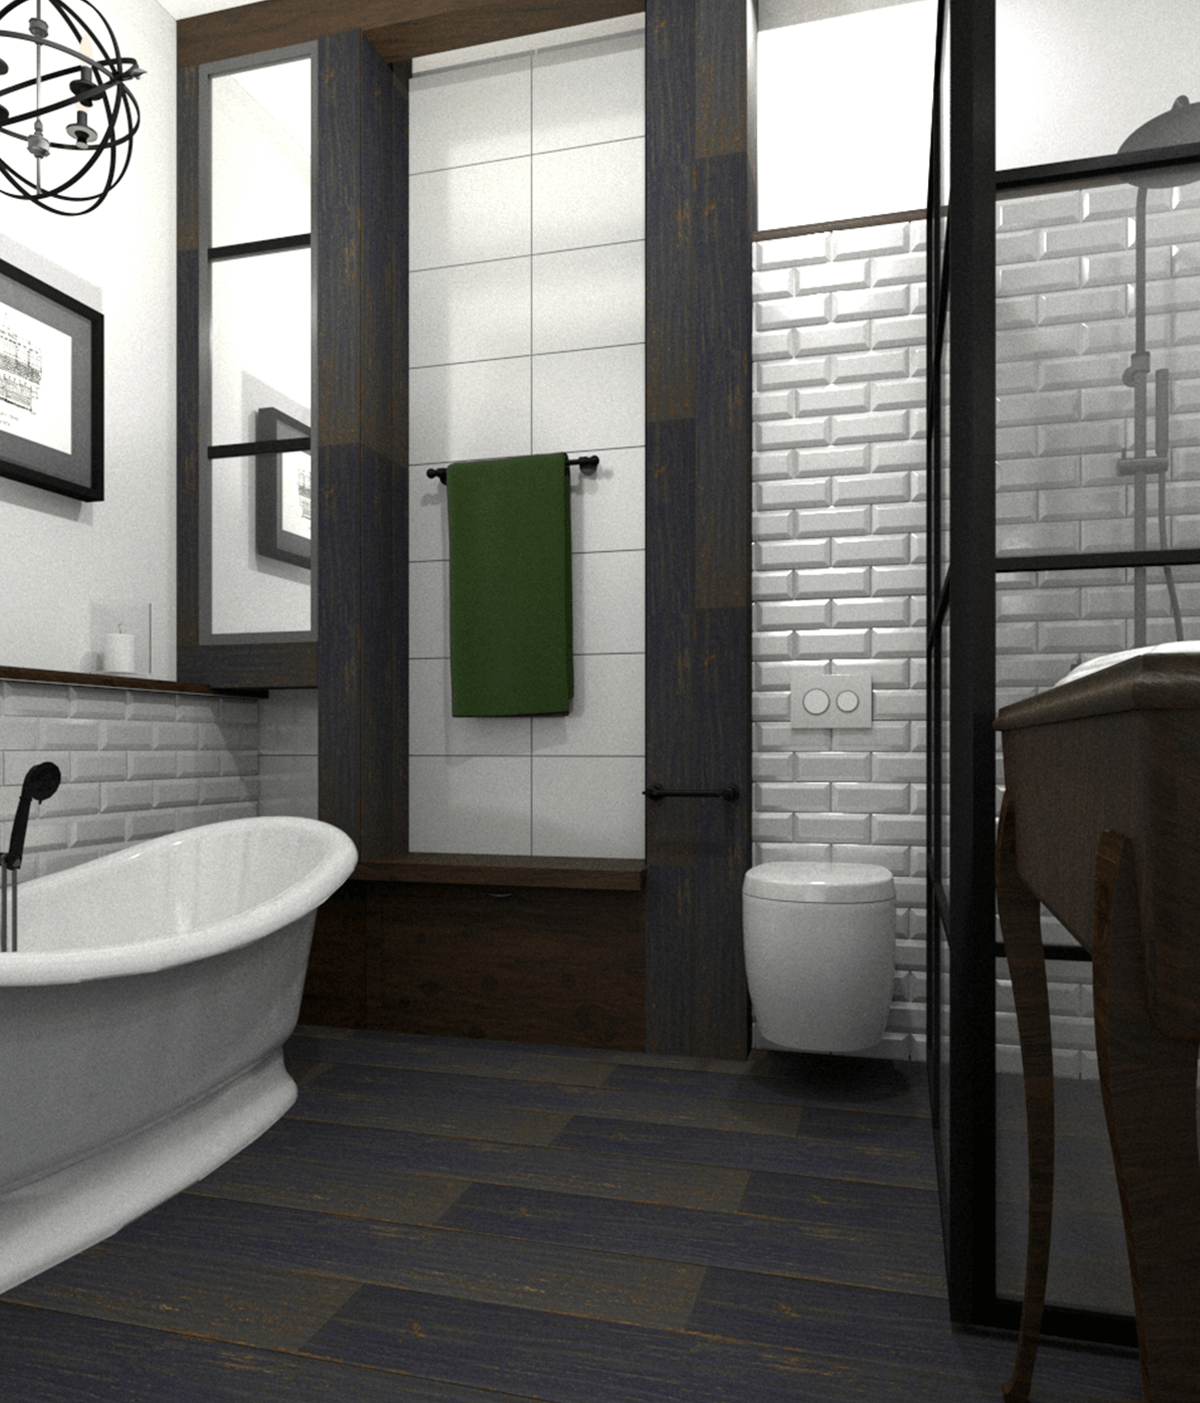 Badezimmer im Vintage-Stil in schwarz-weiß